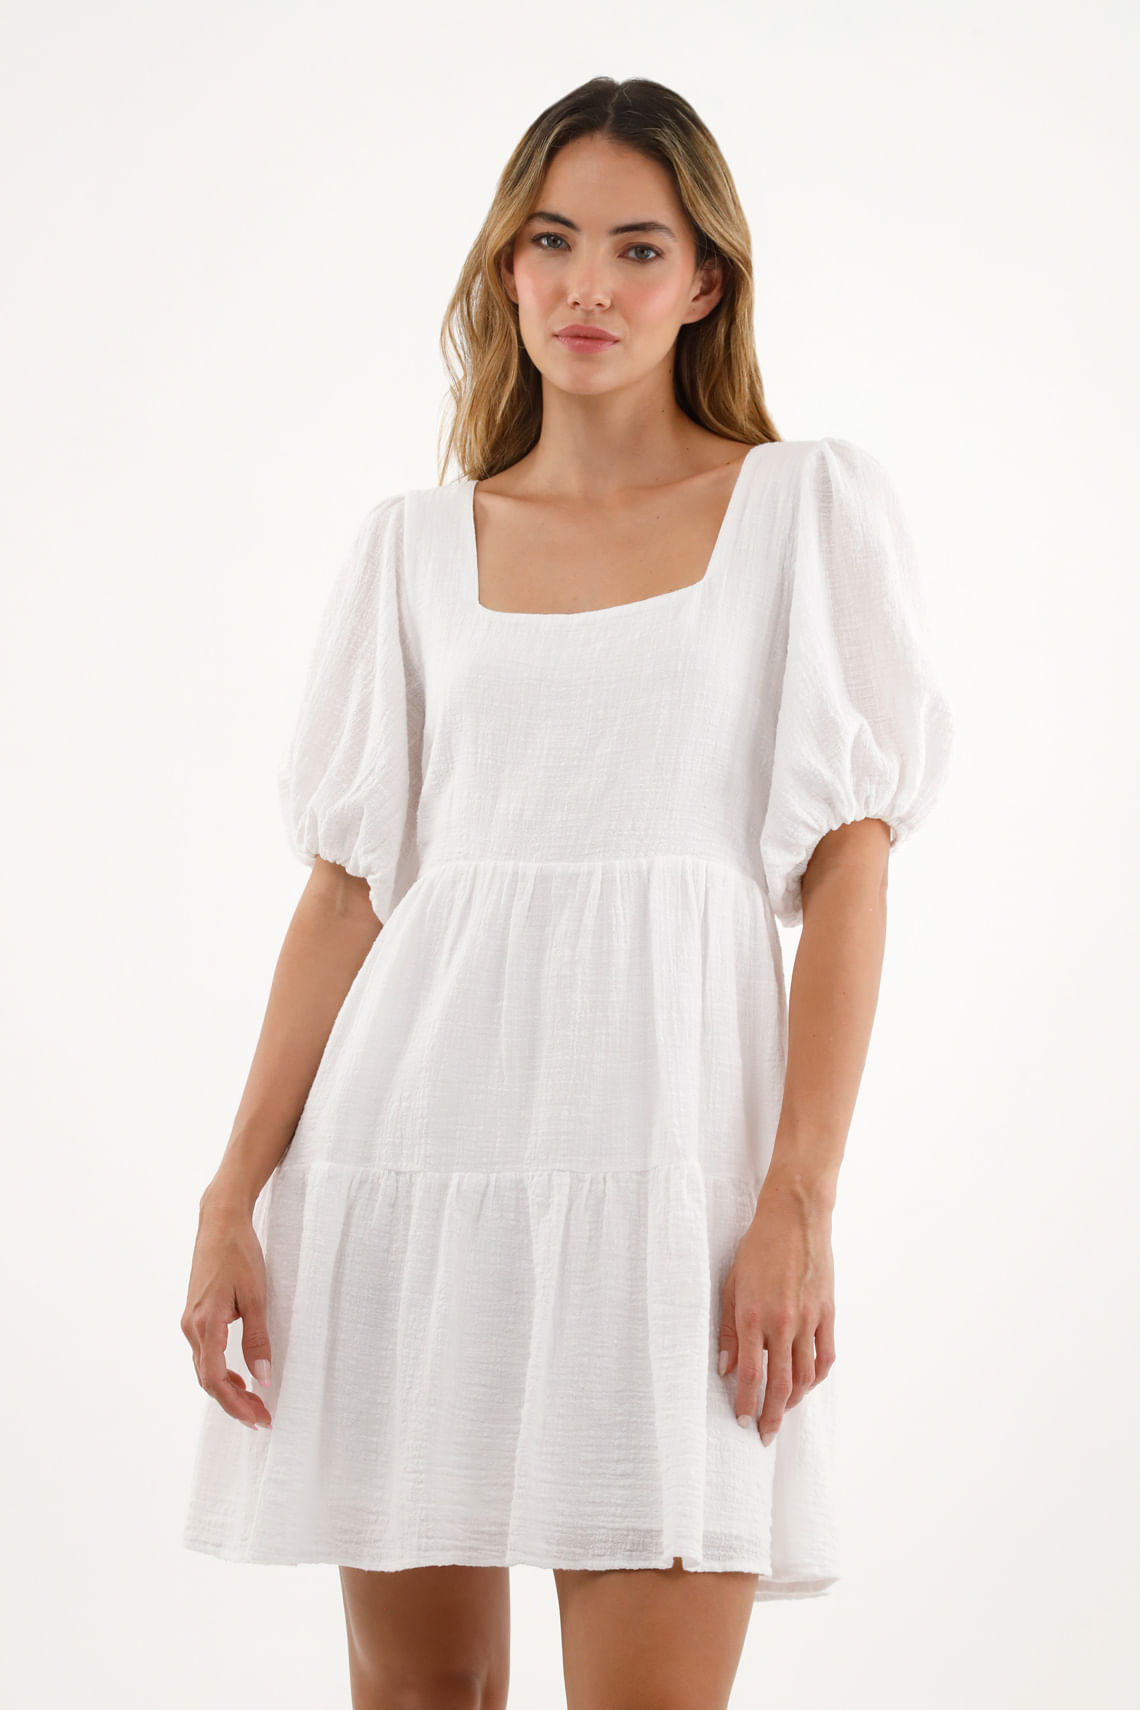 Vestido blanco para mujer, de manga larga, vestido casual con